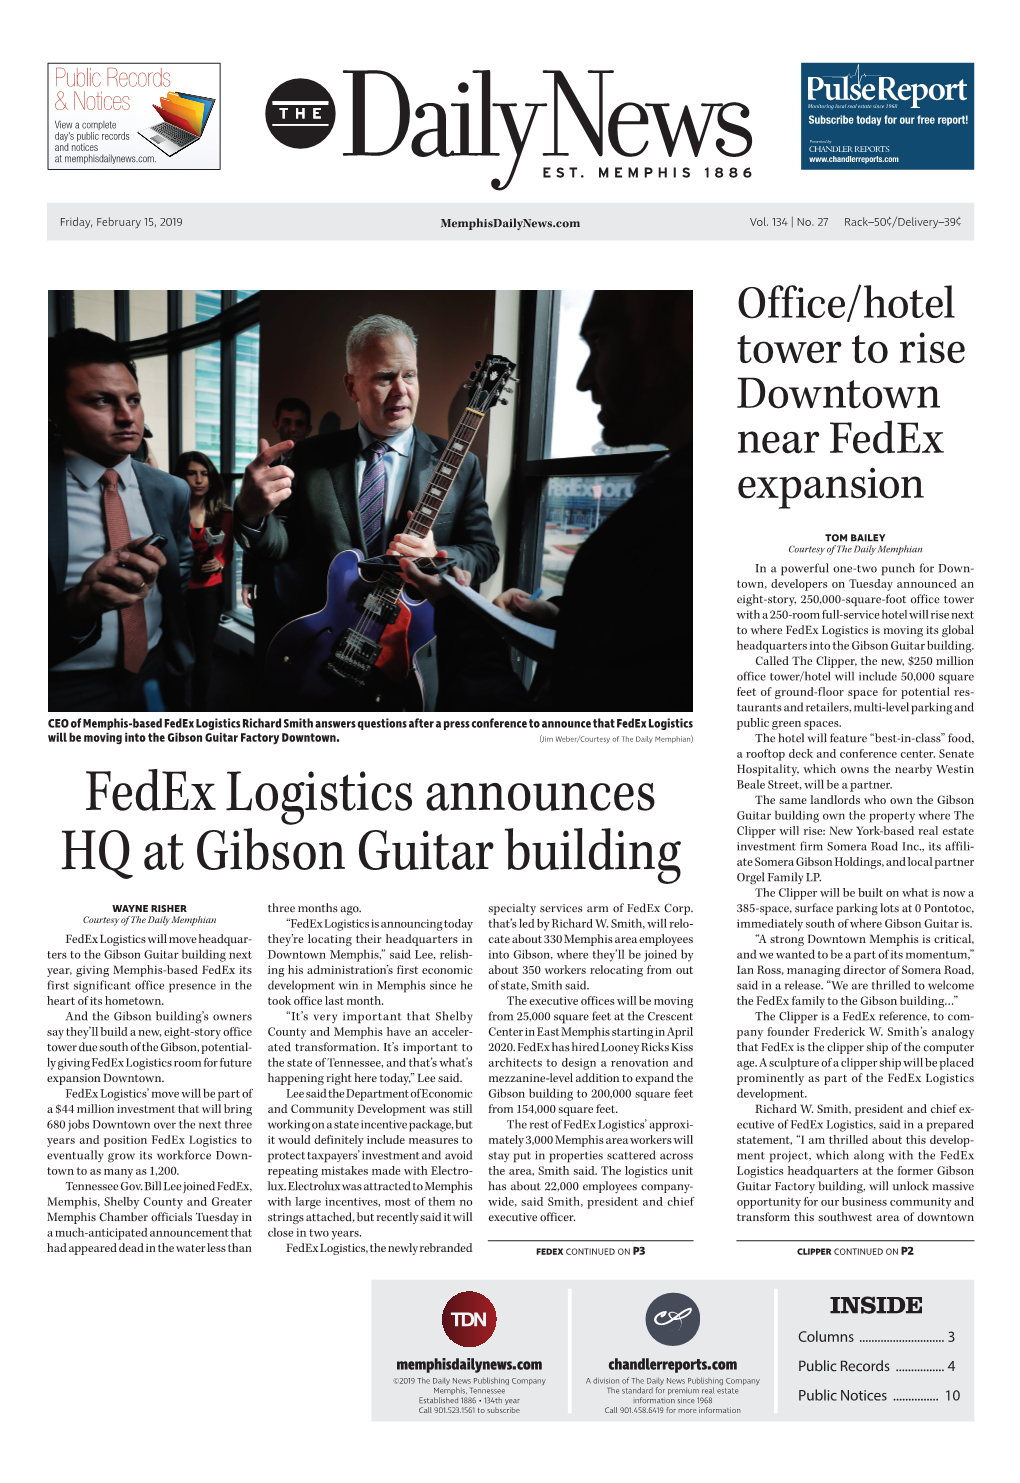 Fedex Logistics Announces HQ at Gibson